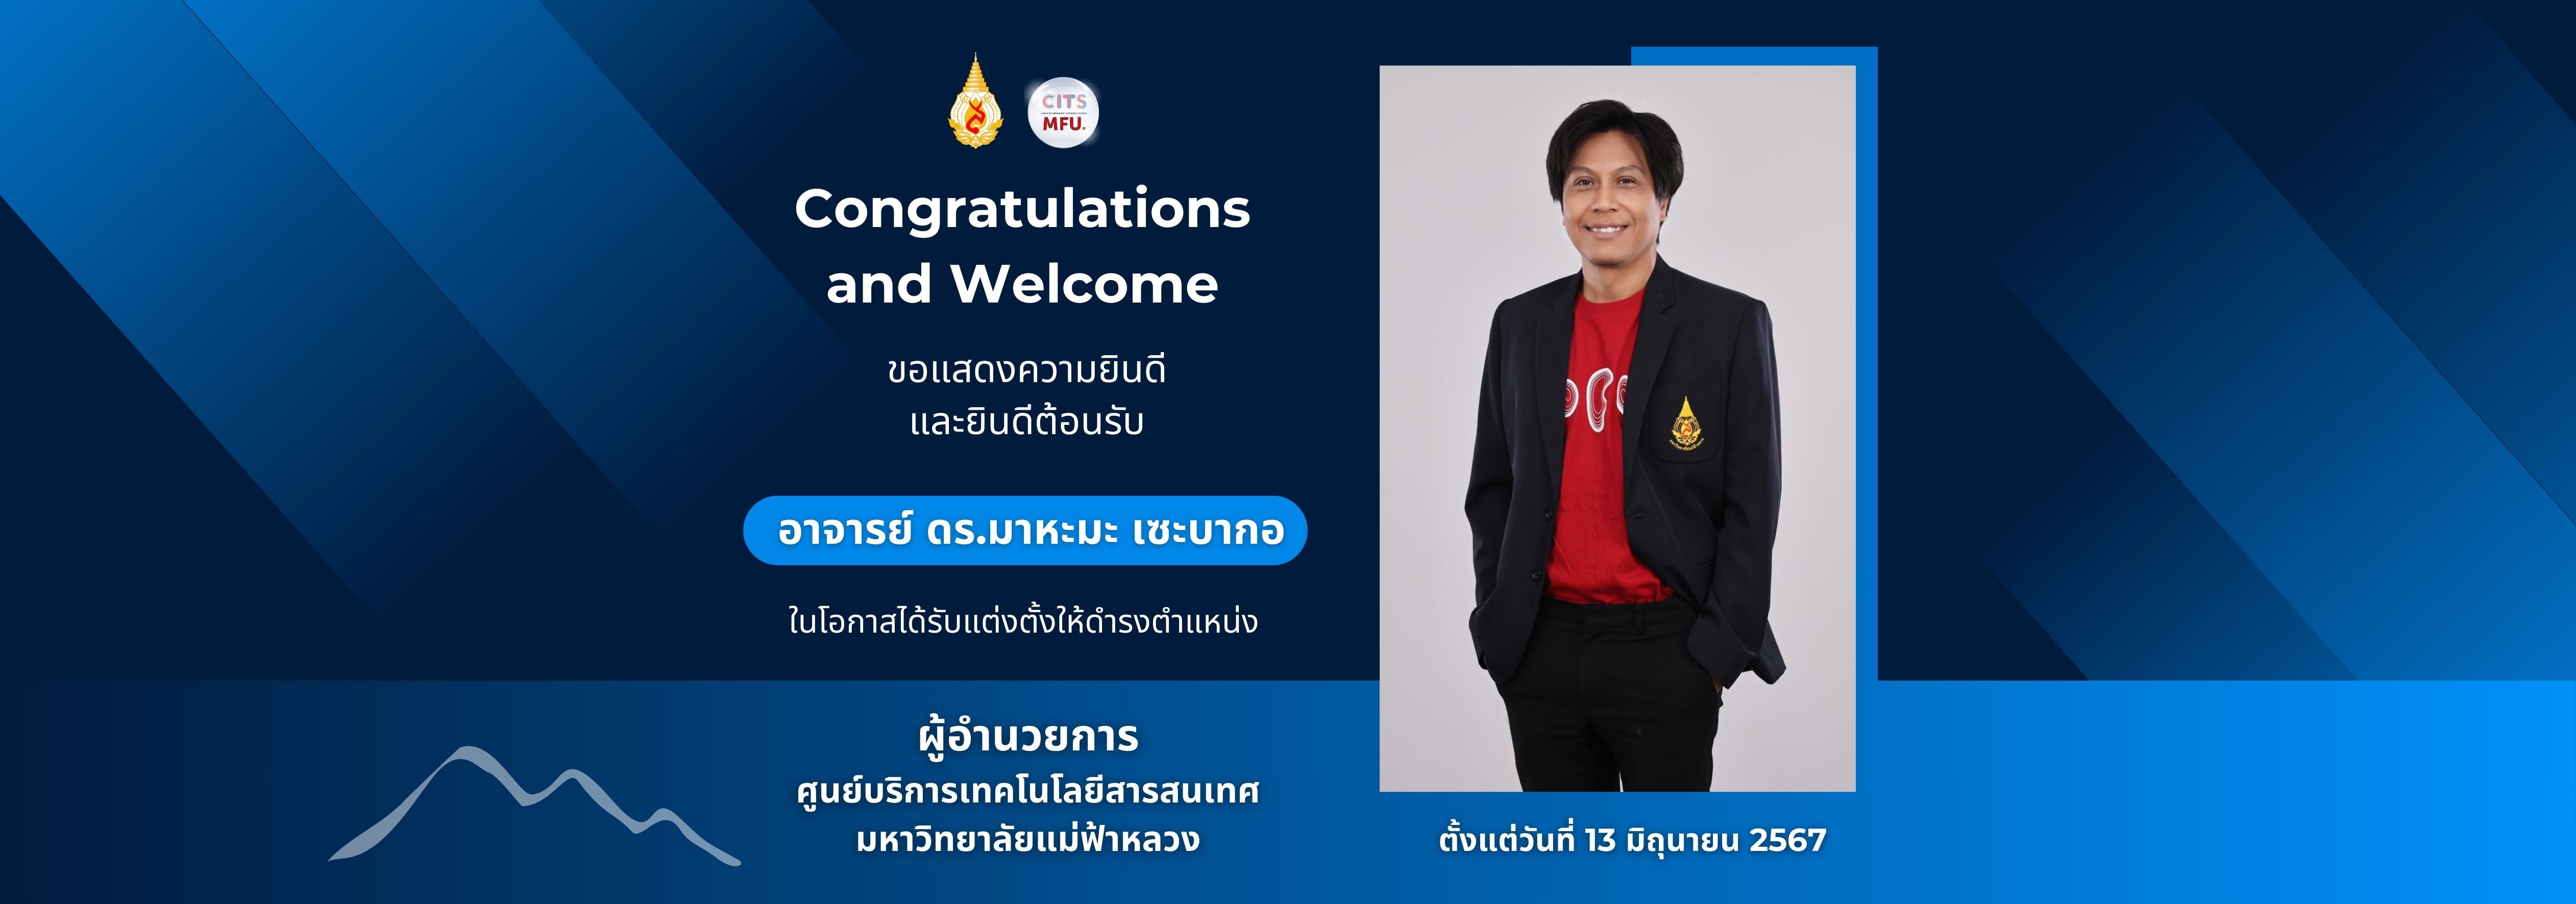 AJ Ma Congratulation